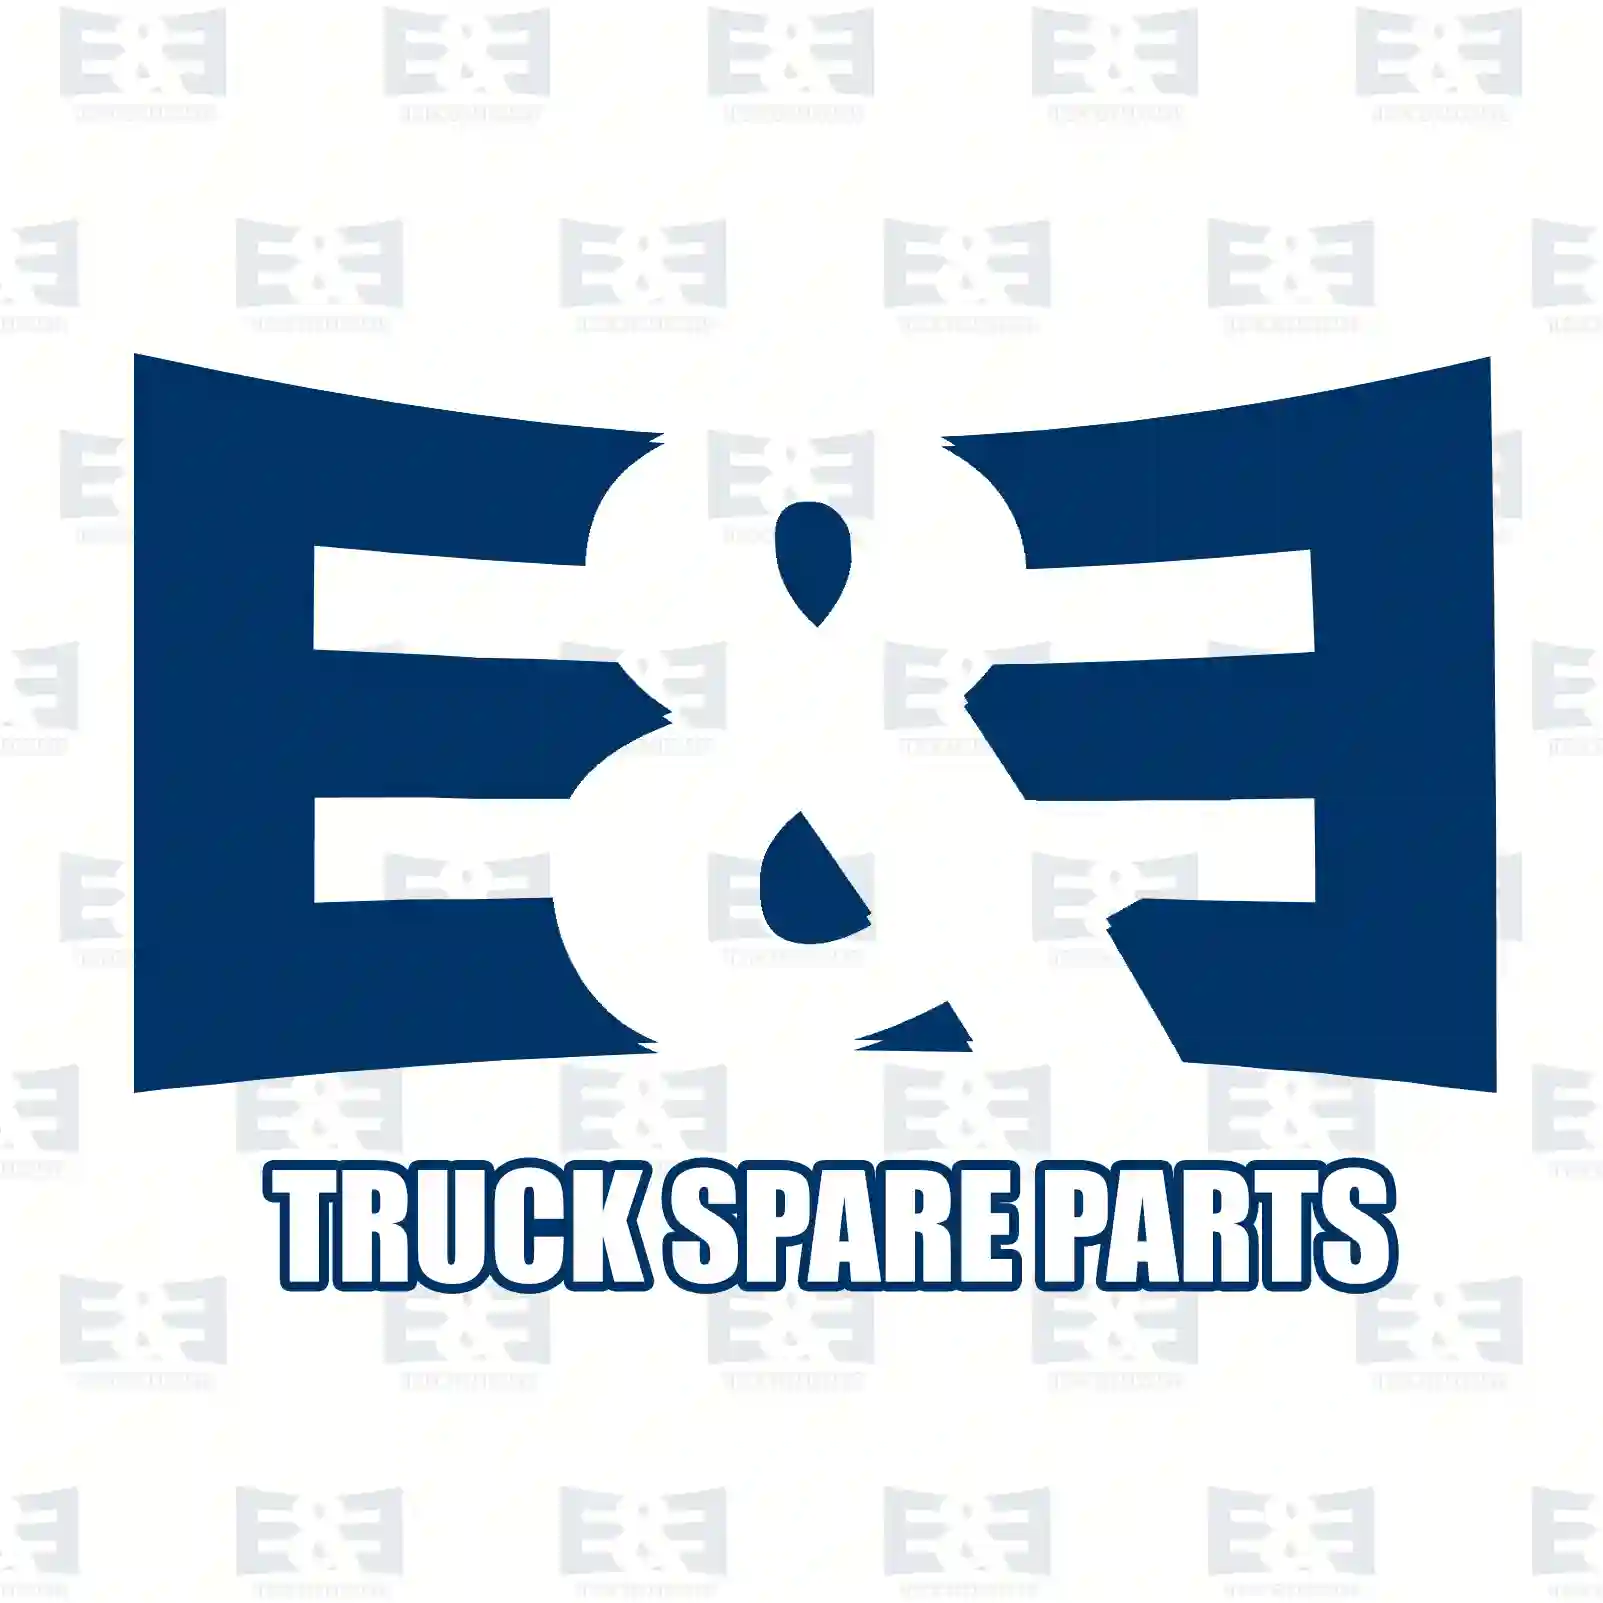 Overhaul kit, 2E2207169, 270776, 276123 ||  2E2207169 E&E Truck Spare Parts | Truck Spare Parts, Auotomotive Spare Parts Overhaul kit, 2E2207169, 270776, 276123 ||  2E2207169 E&E Truck Spare Parts | Truck Spare Parts, Auotomotive Spare Parts